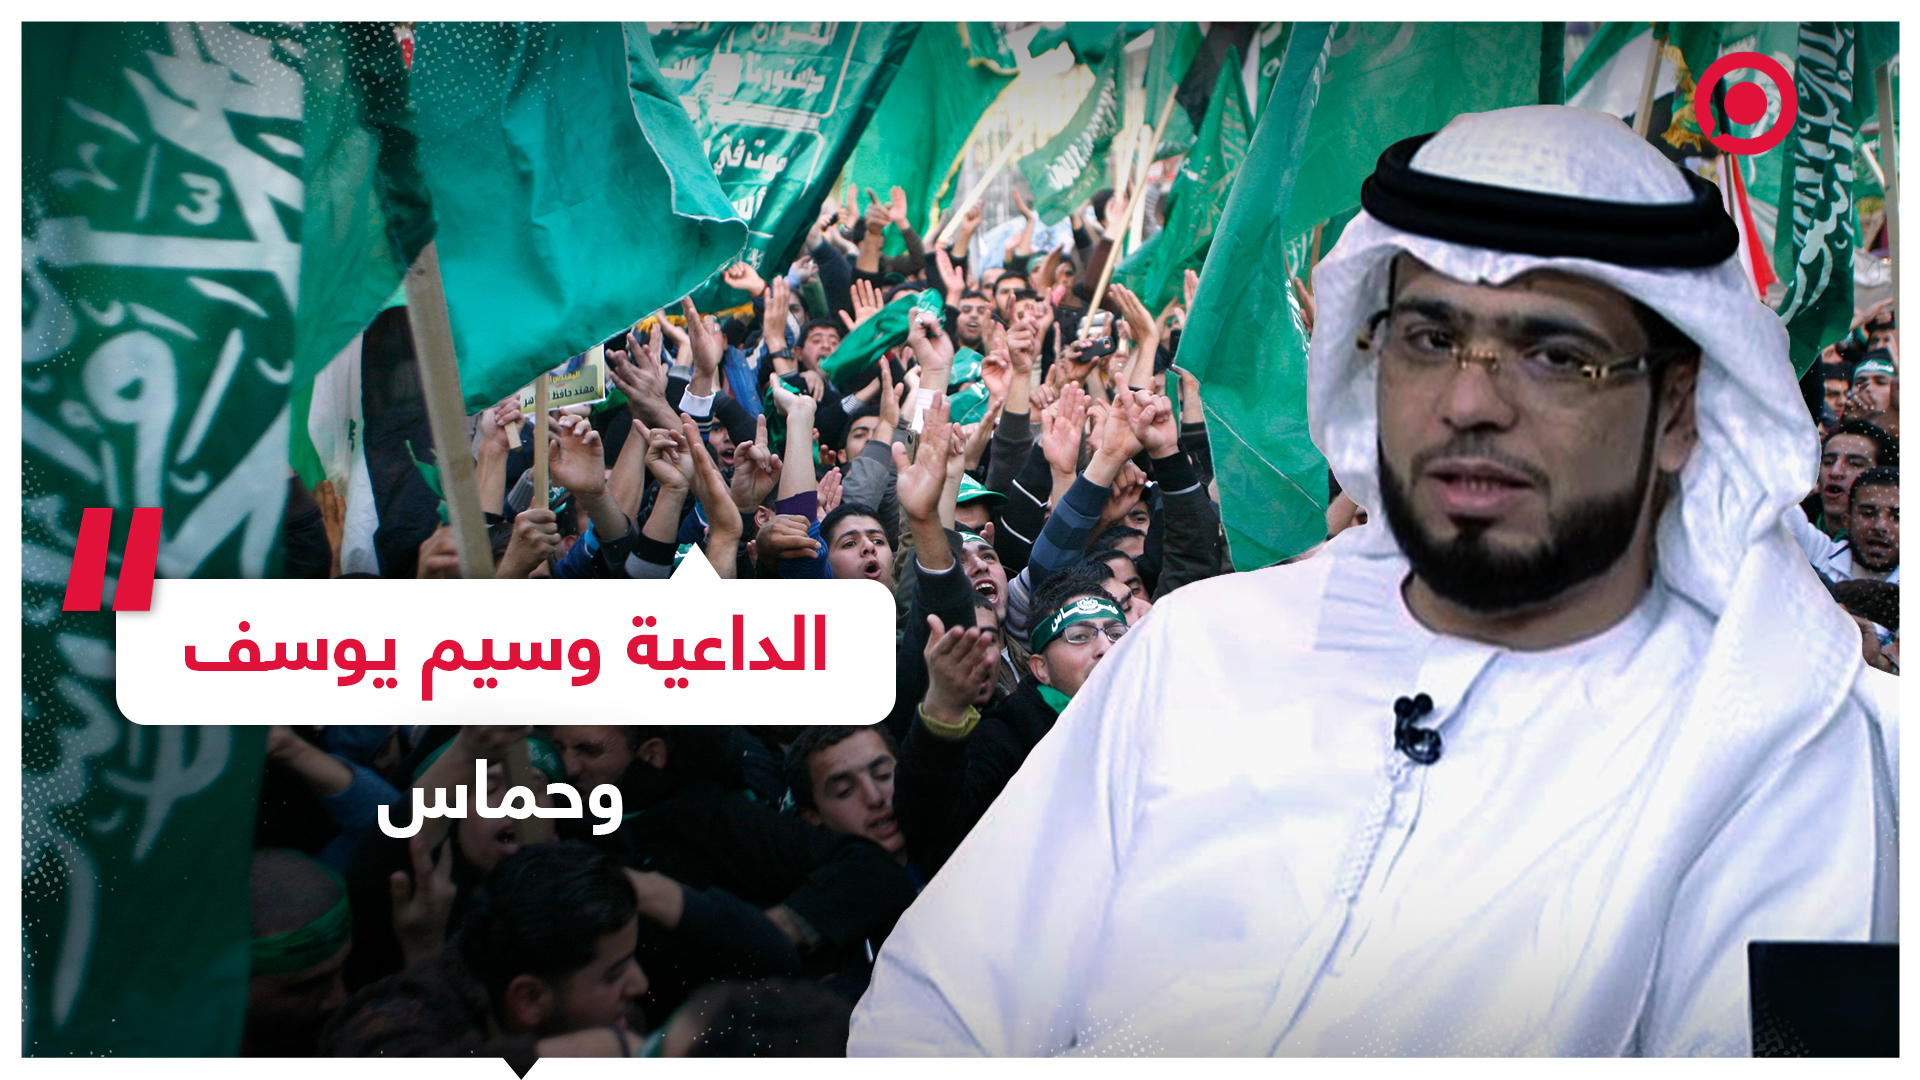 الداعية الإماراتي وسيم يوسف يواصل هجومه على حركة حماس